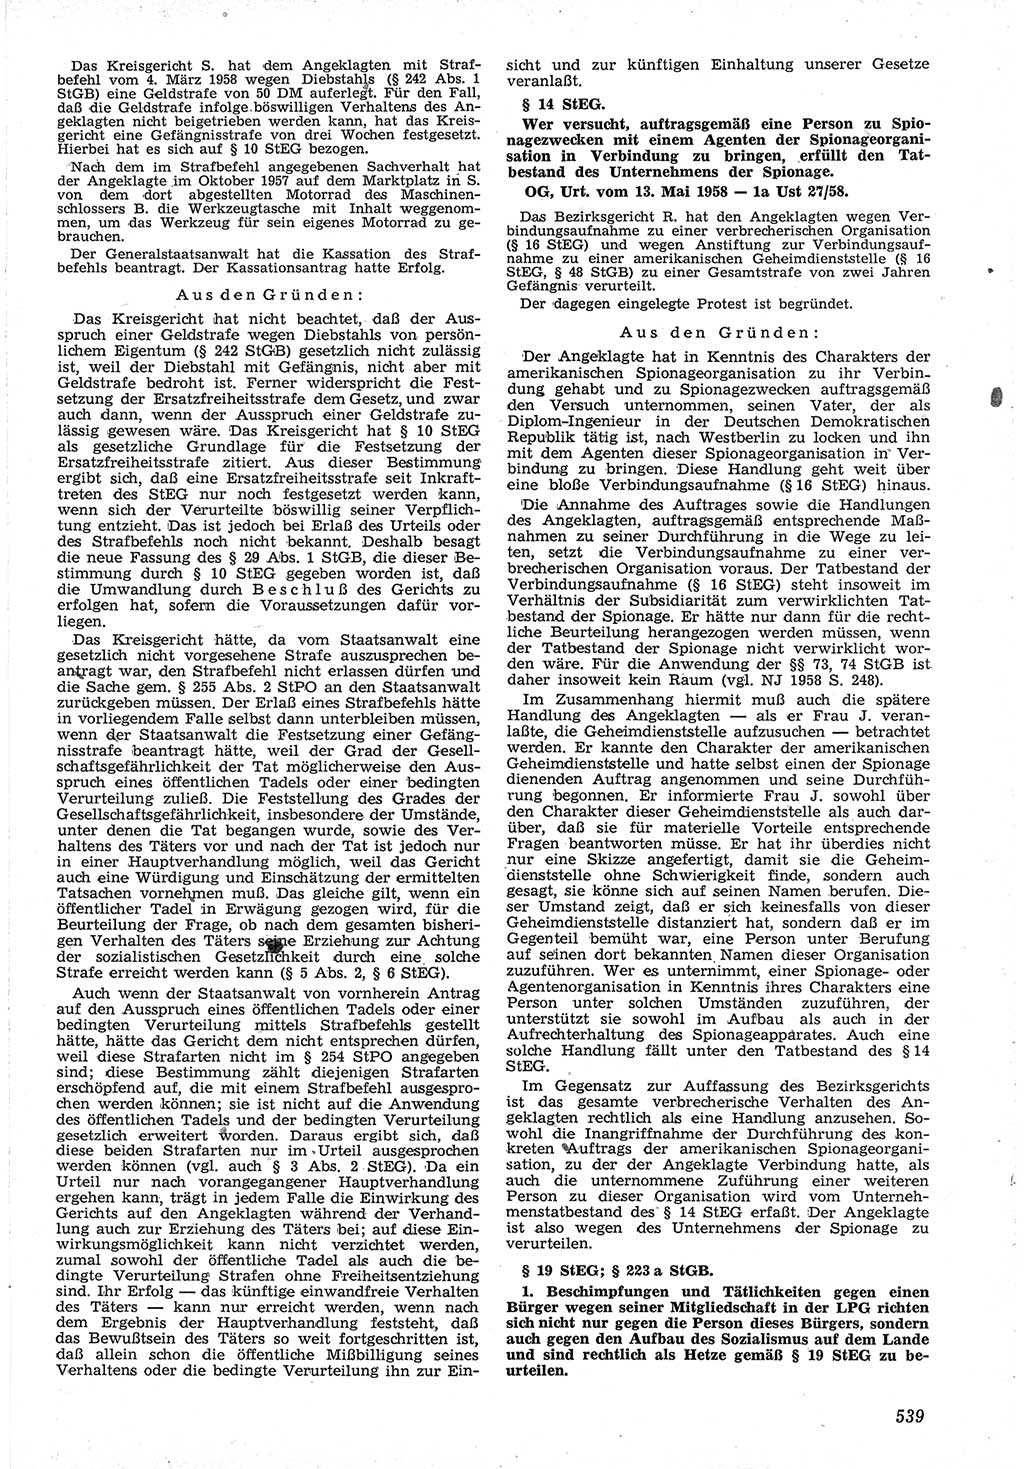 Neue Justiz (NJ), Zeitschrift für Recht und Rechtswissenschaft [Deutsche Demokratische Republik (DDR)], 12. Jahrgang 1958, Seite 539 (NJ DDR 1958, S. 539)